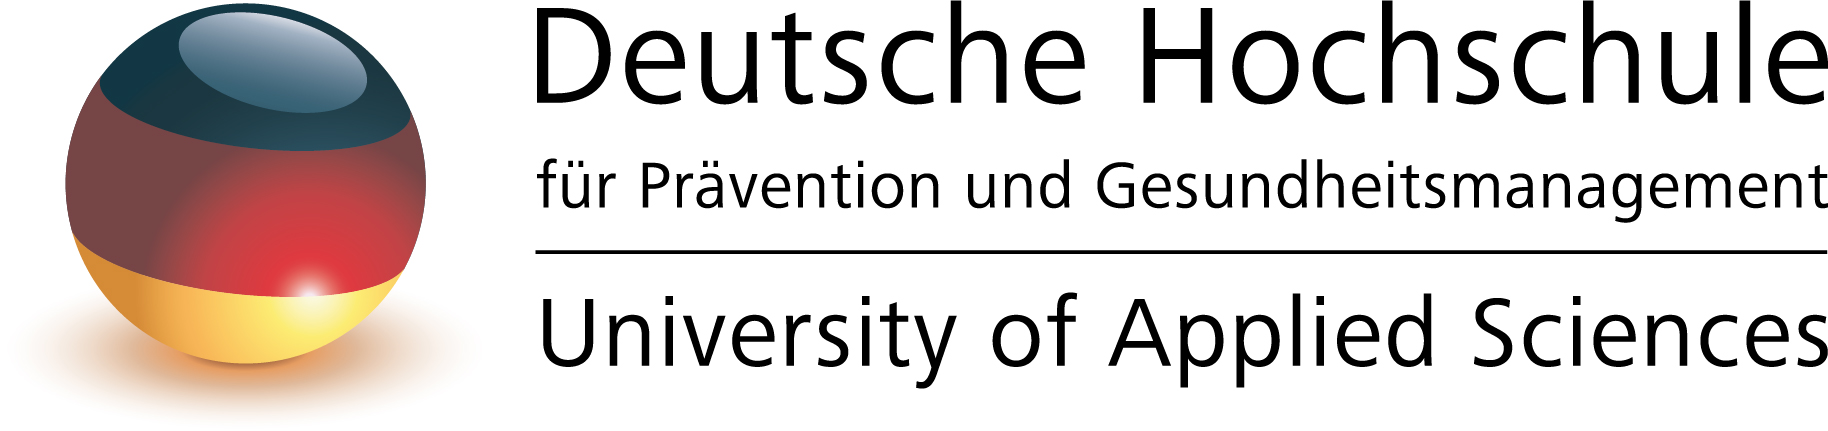 Deutsche Hochschule für Prävention und Gesundheitsmanagement - Studienzentrum München Logo